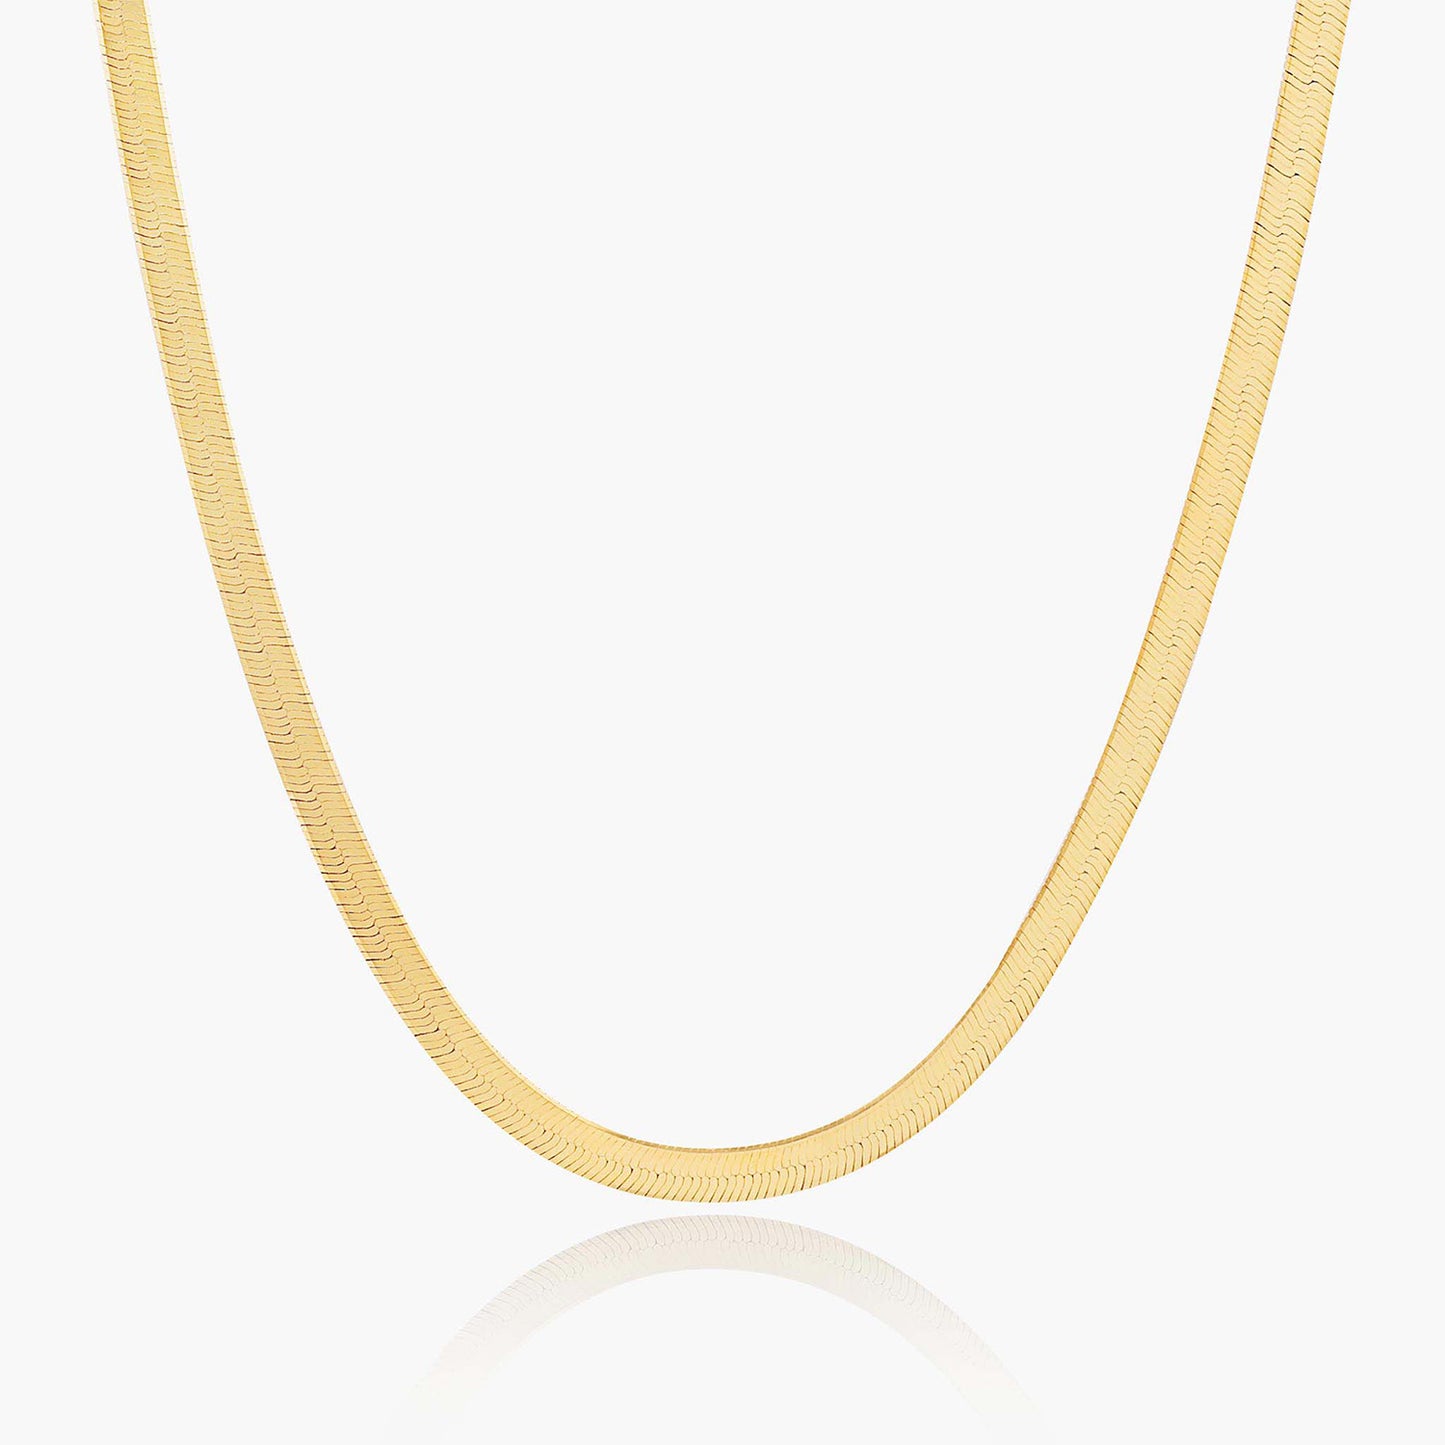 Playa Luna Jewelry Gold Herringbone Chain Elena